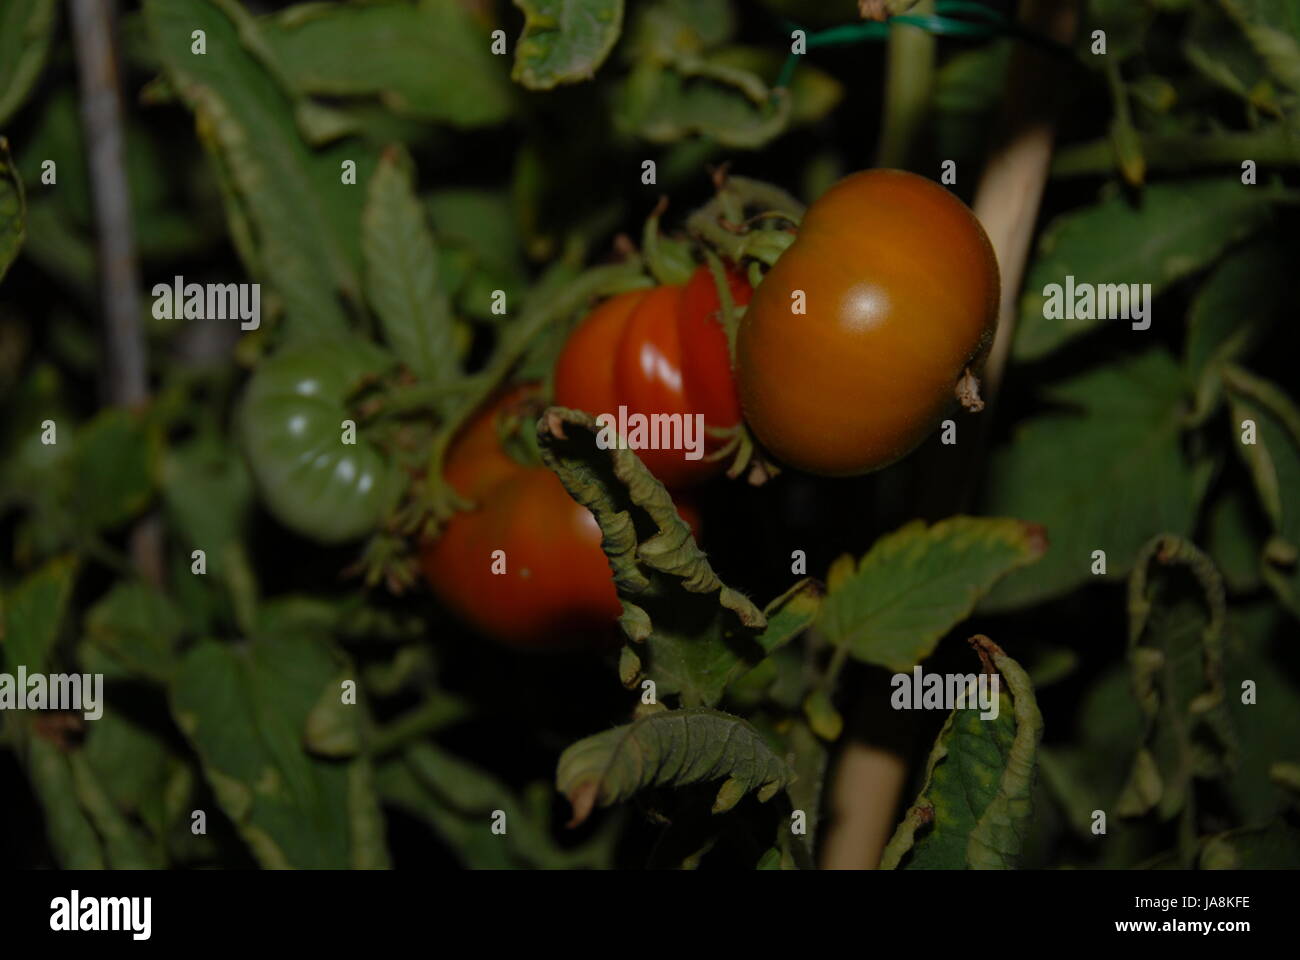 tomatoes, tomatos, vegetable, tomatoes, tomatos, tomate solanum lycopersicum, Stock Photo